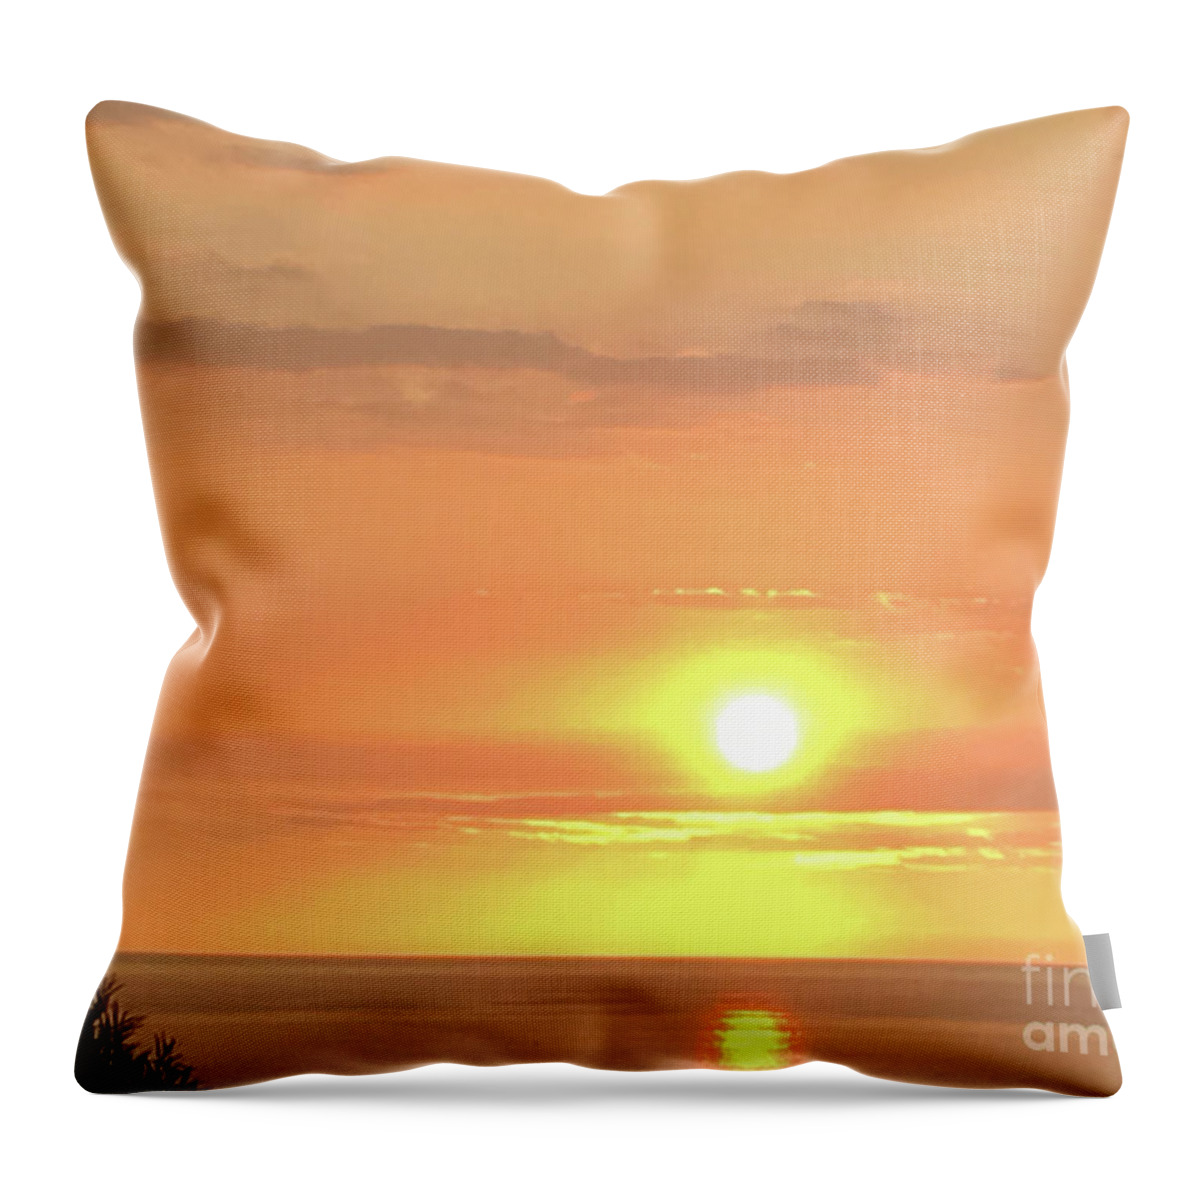 Sunsets Throw Pillow featuring the photograph Autumn Sunset by Karen Nicholson